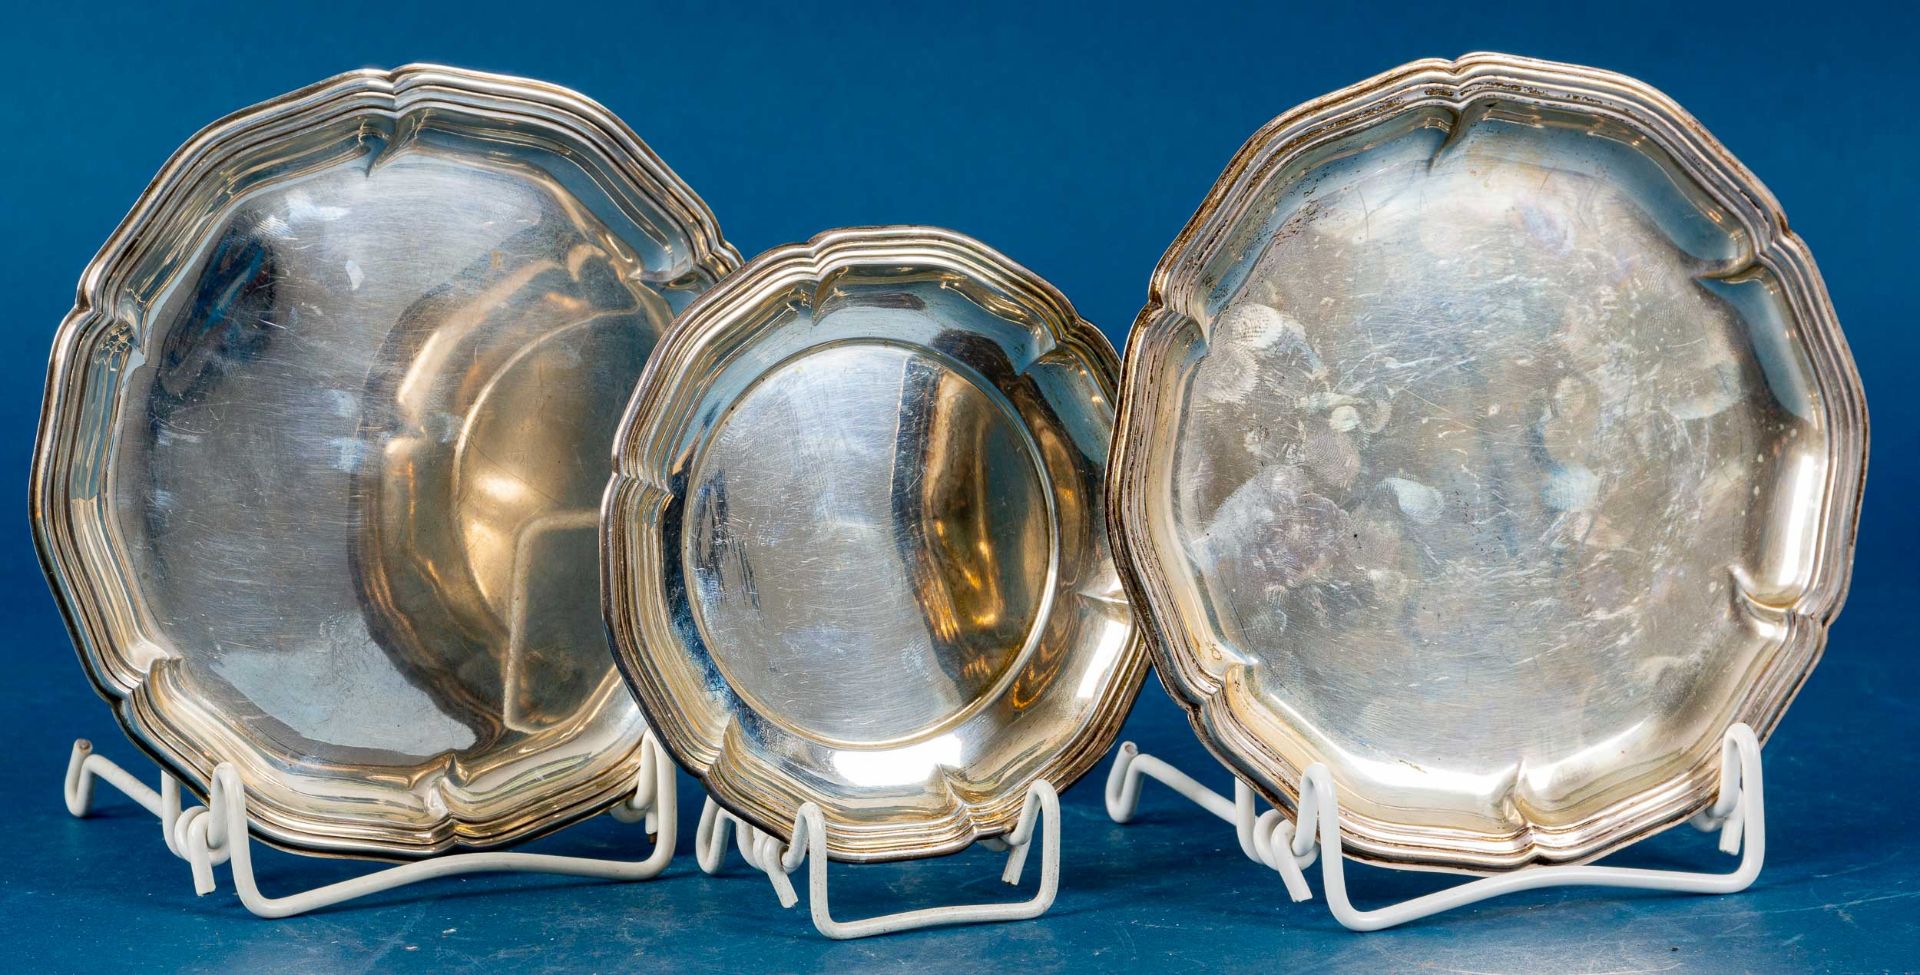 3teiliges Silber-Teller-Set in 2 Größen, Durchmesser ca. 12,5 & 16,5 cm, in 800er, 835er sowie 925e